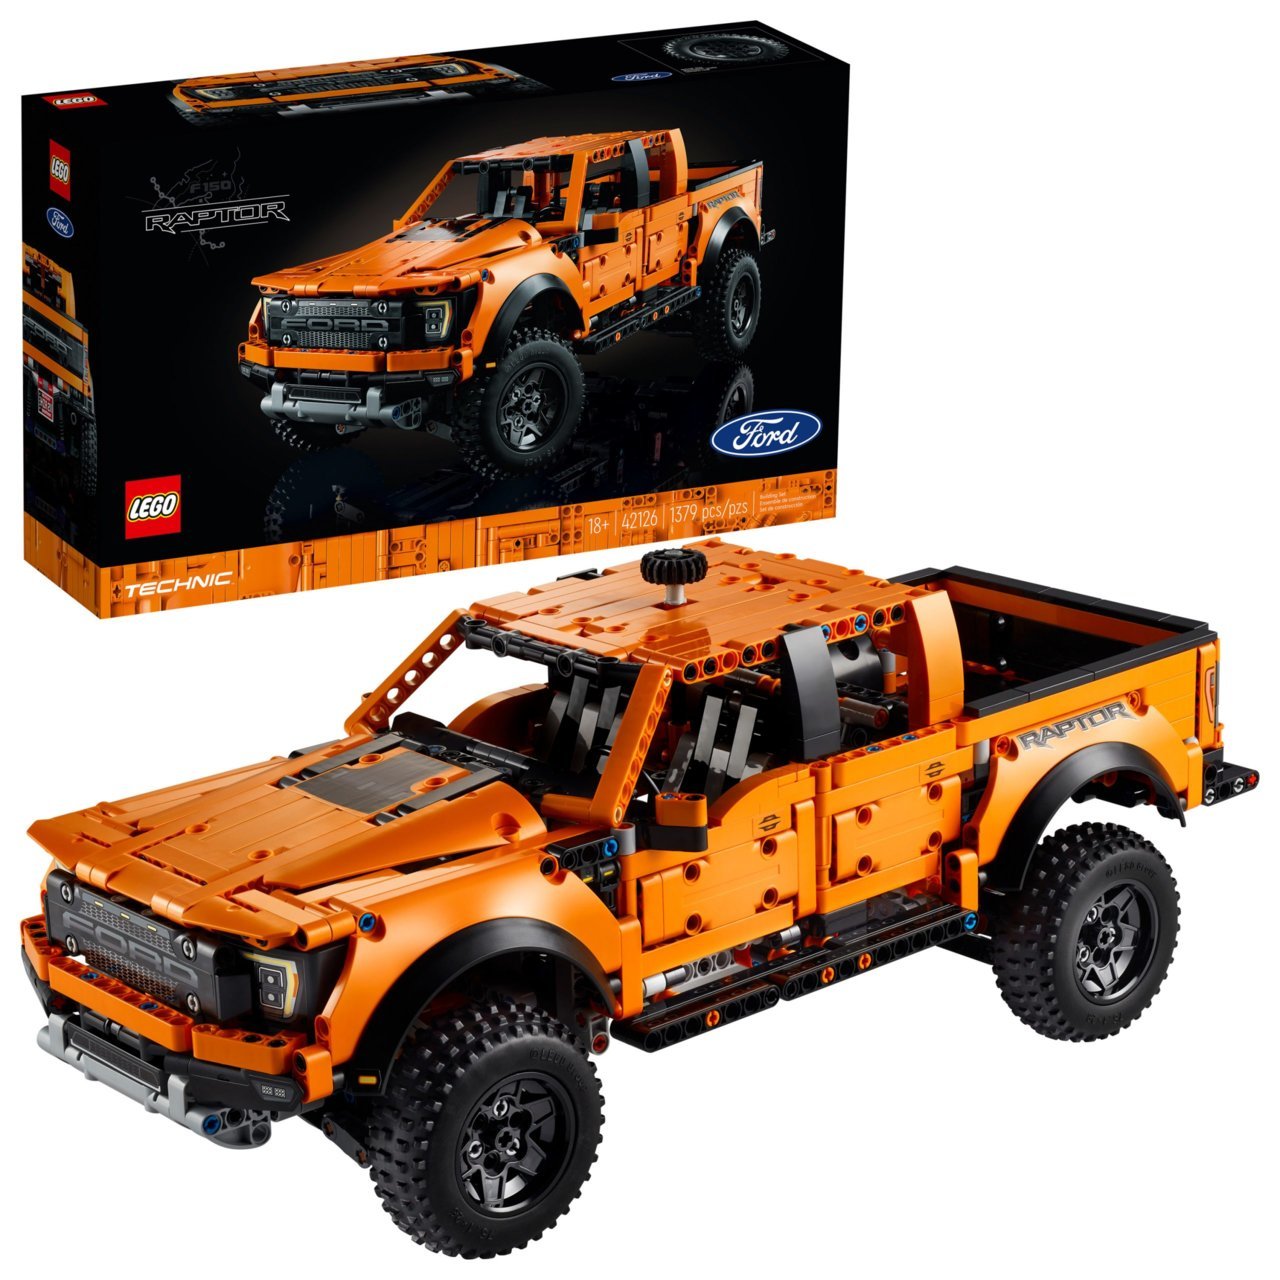 LEGO-Technic-Ford-Raptor-F-150-42126-scaled.jpg